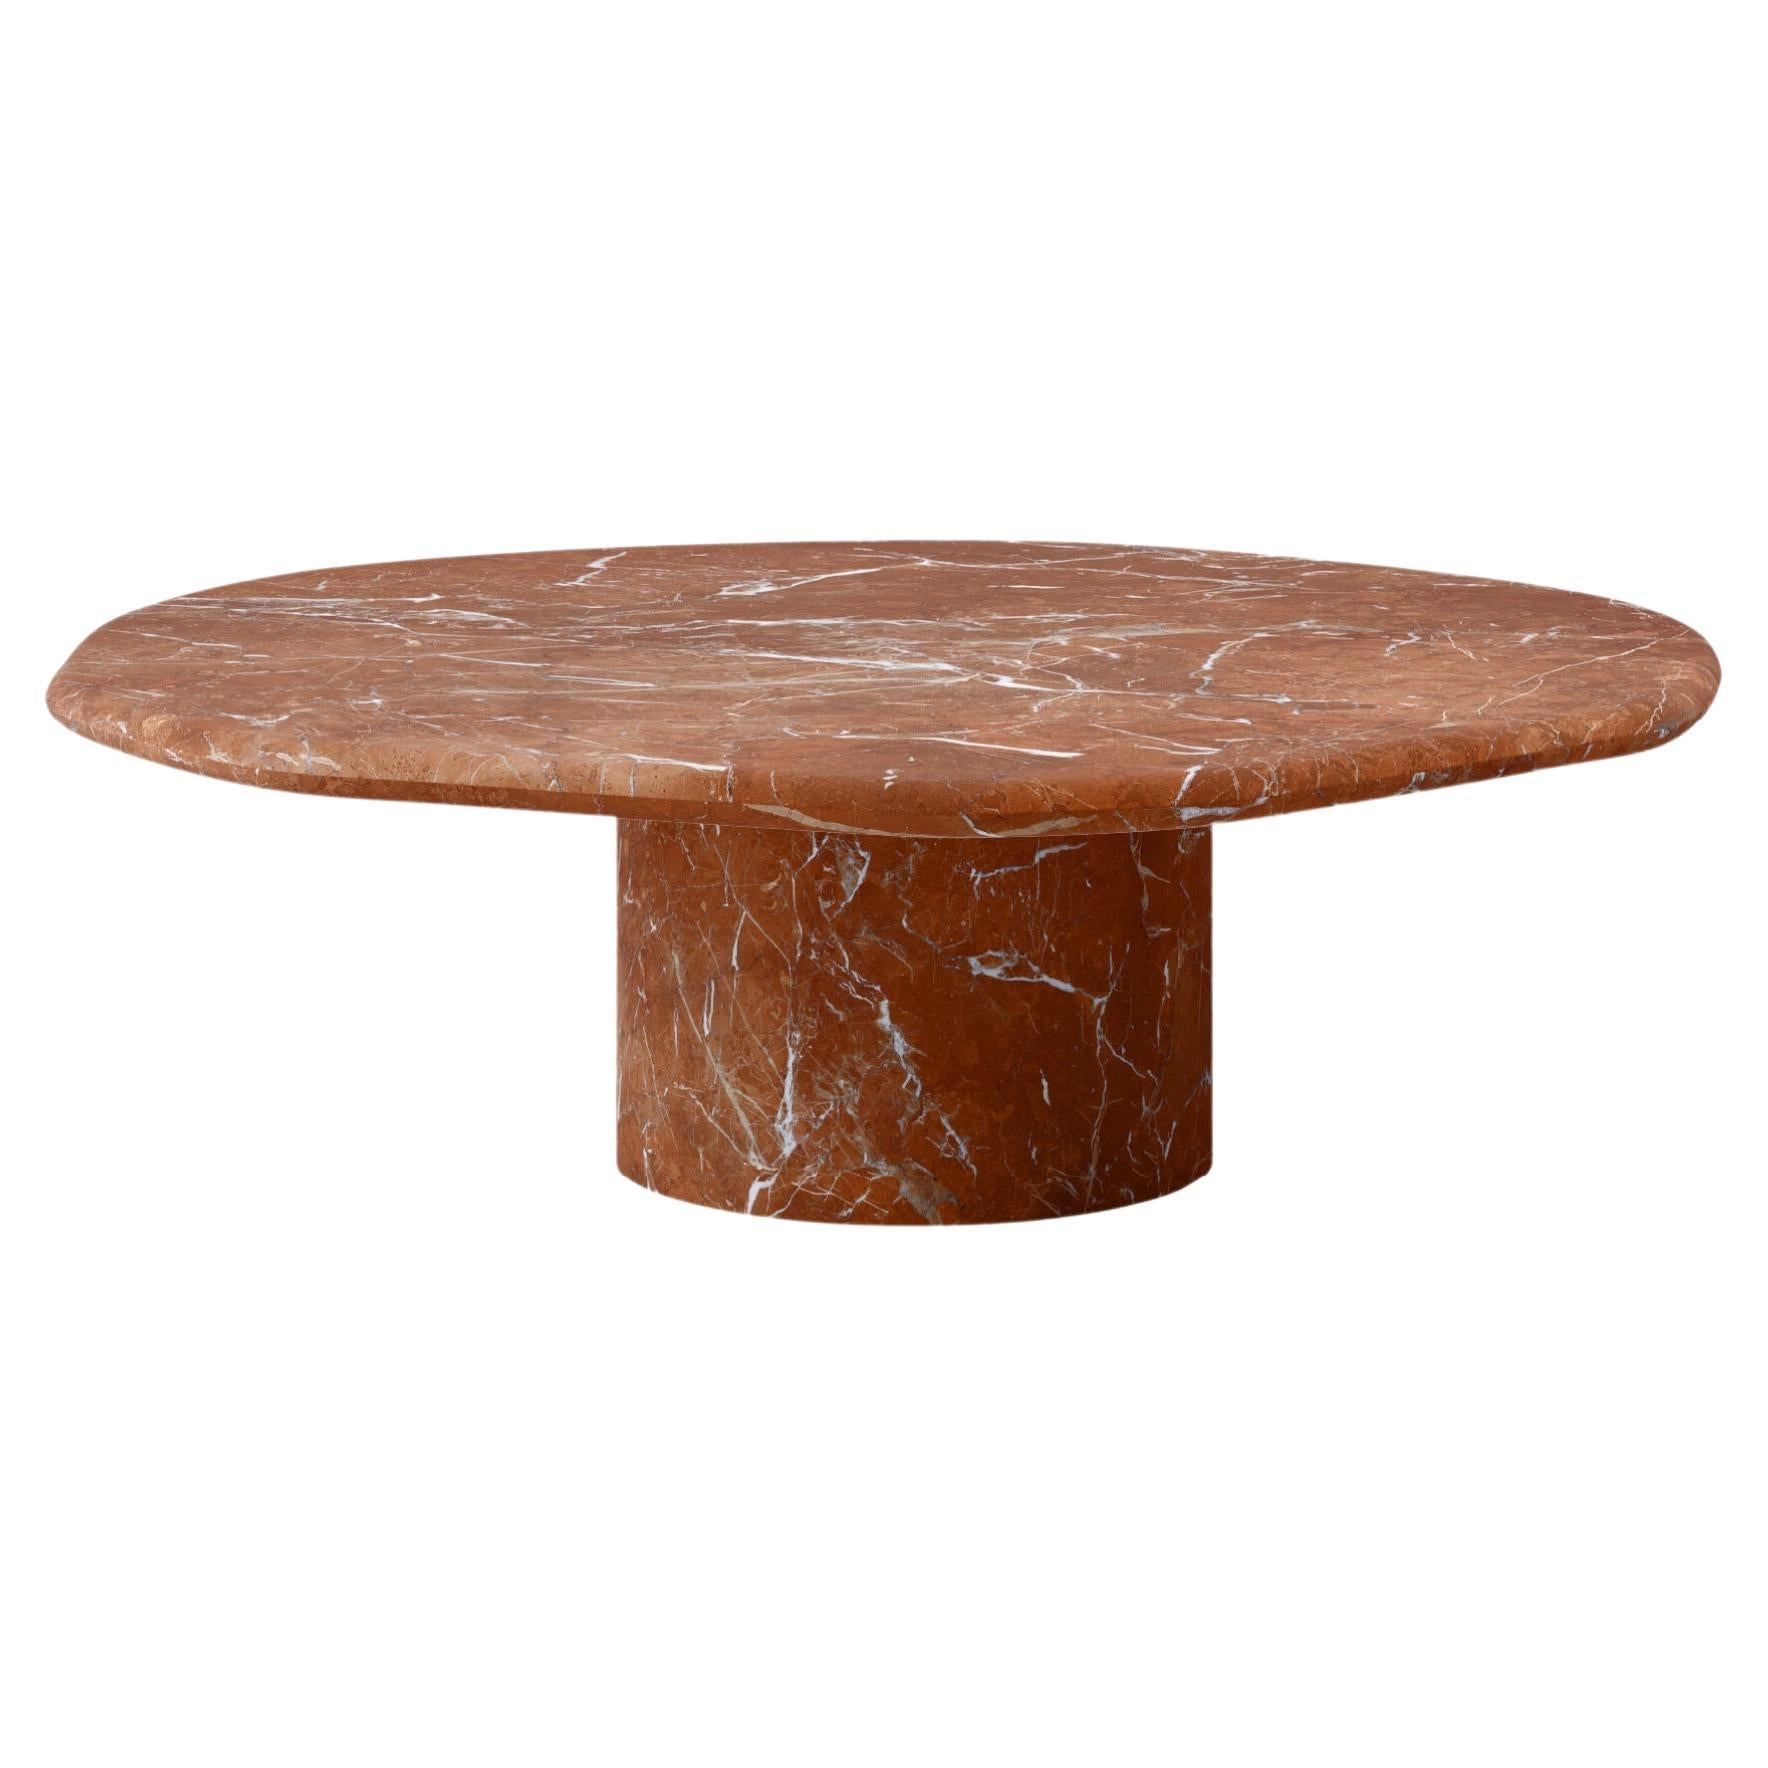 FORM(LA) Lago Round Coffee Table 48”L x 48”W x 14”H Rojo Alicante Marble For Sale